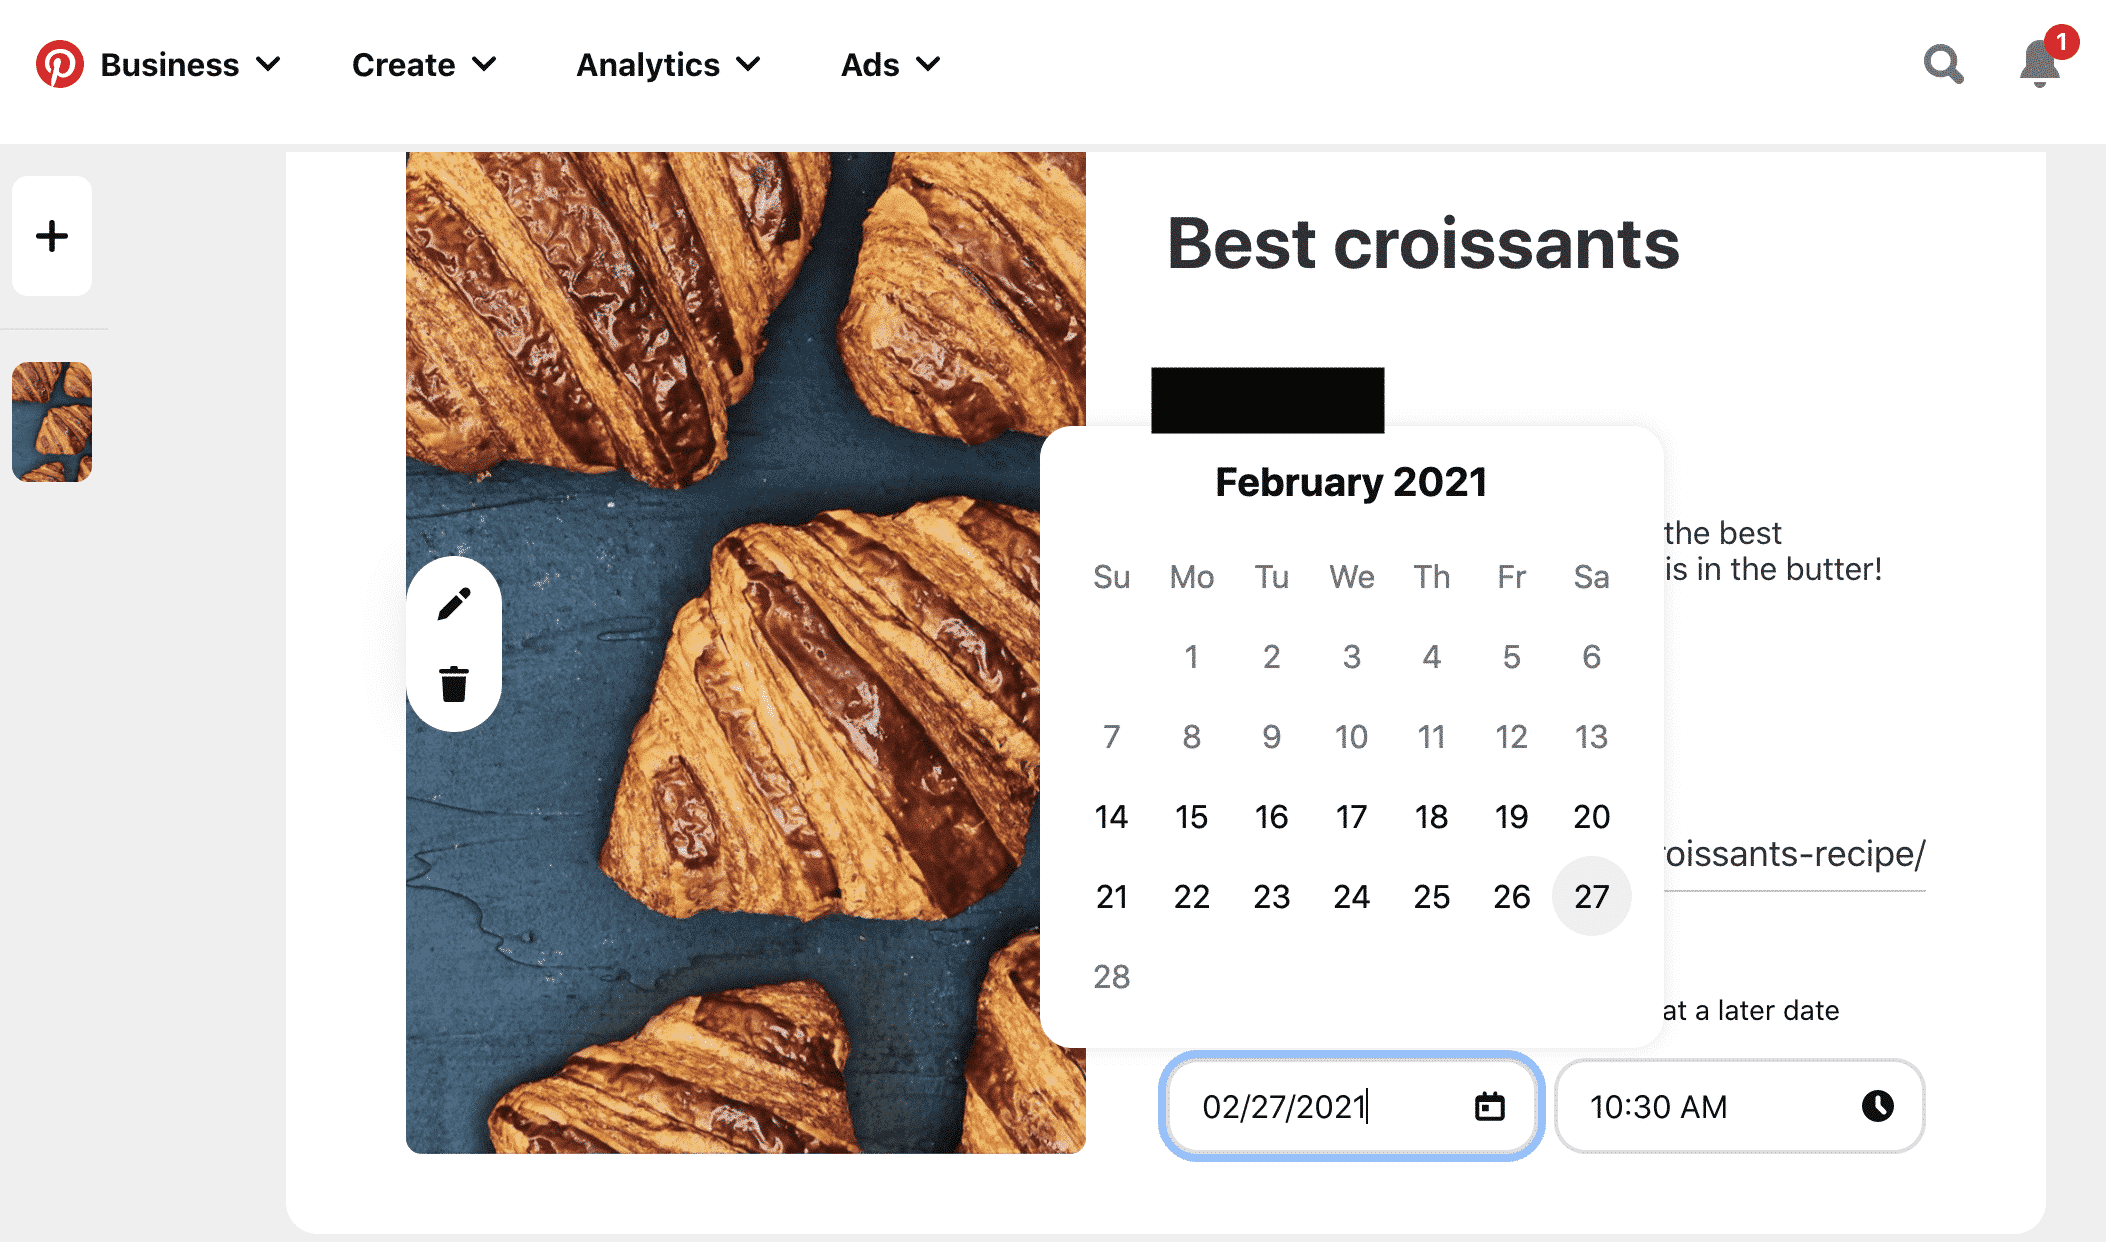 Planen Sie das beste Croissants-Board für Februar 2021